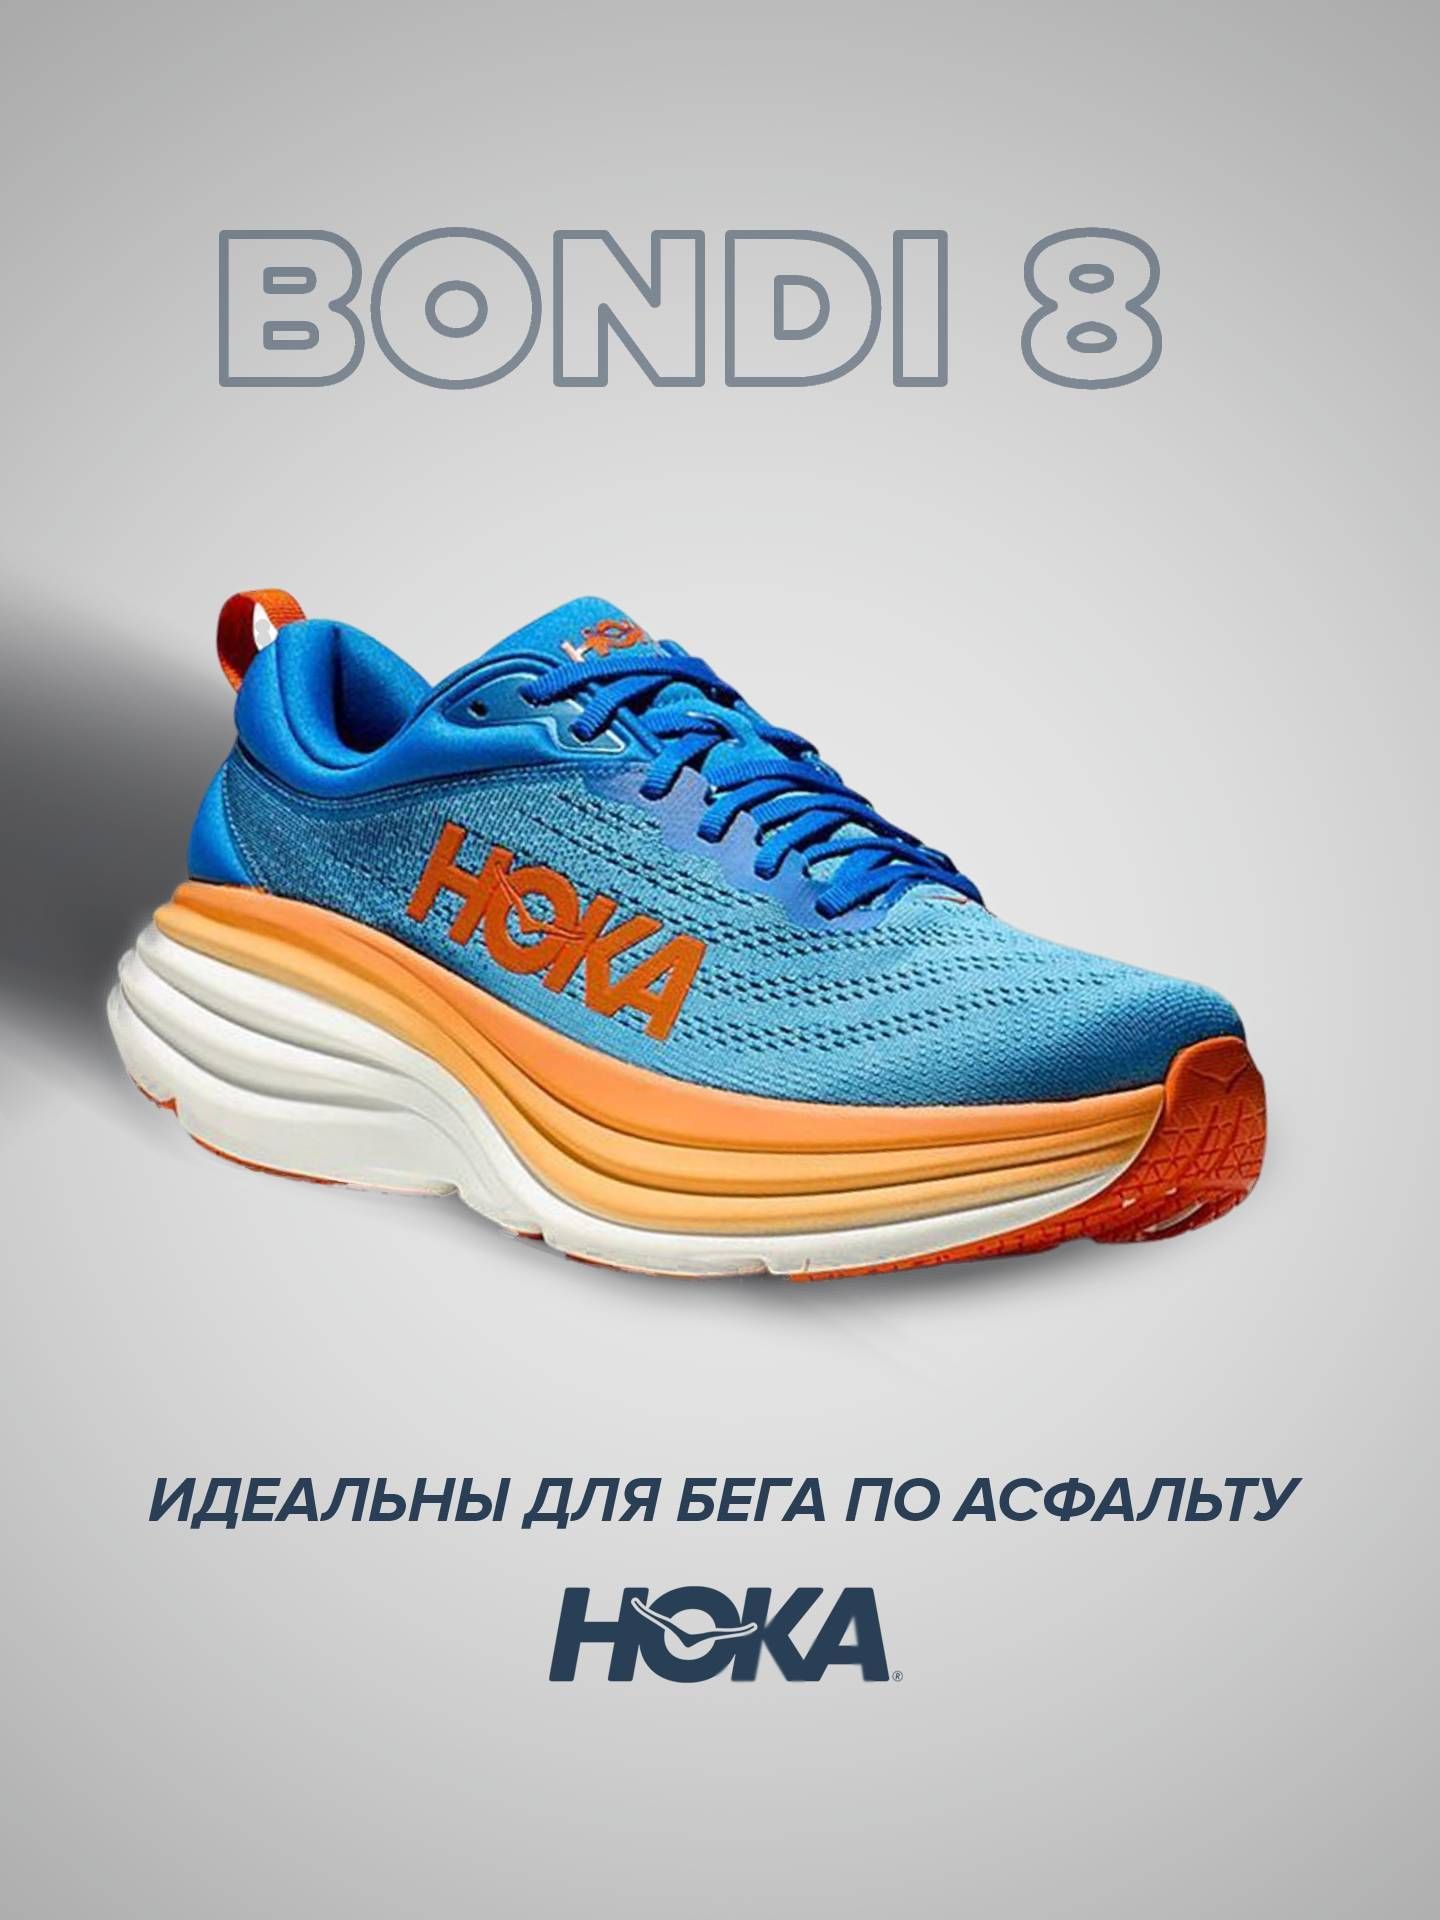 Спортивные кроссовки унисекс Hoka Bondi 8 голубые 7 US - купить в Москве, цены на Мегамаркет | 600014726698